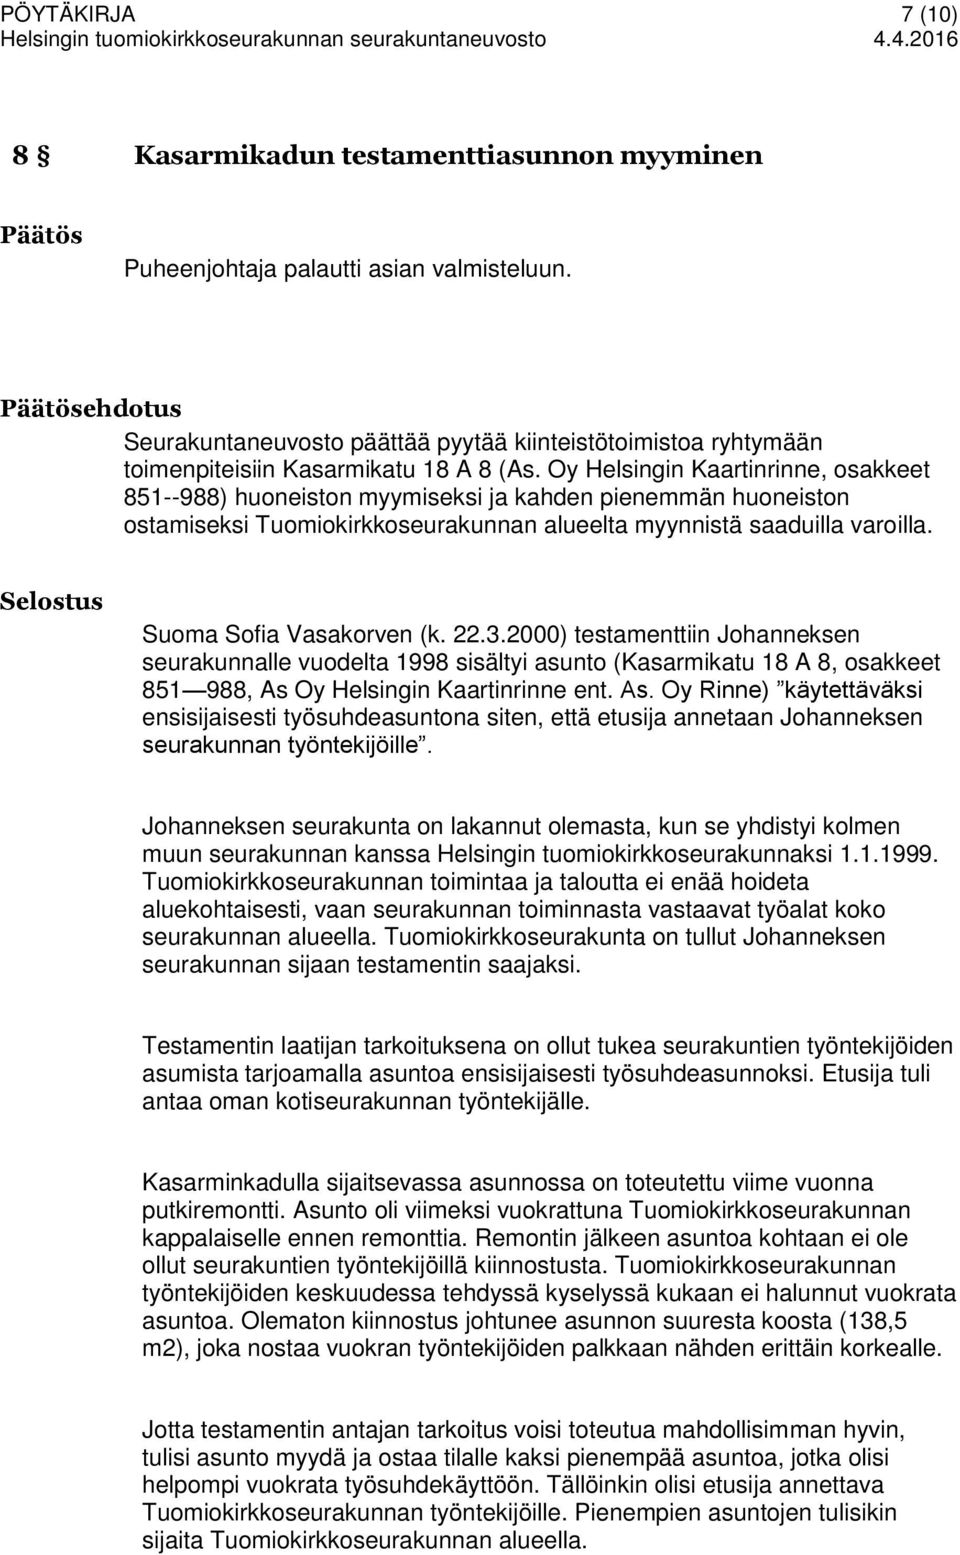 Oy Helsingin Kaartinrinne, osakkeet 851--988) huoneiston myymiseksi ja kahden pienemmän huoneiston ostamiseksi Tuomiokirkkoseurakunnan alueelta myynnistä saaduilla varoilla. Suoma Sofia Vasakorven (k.